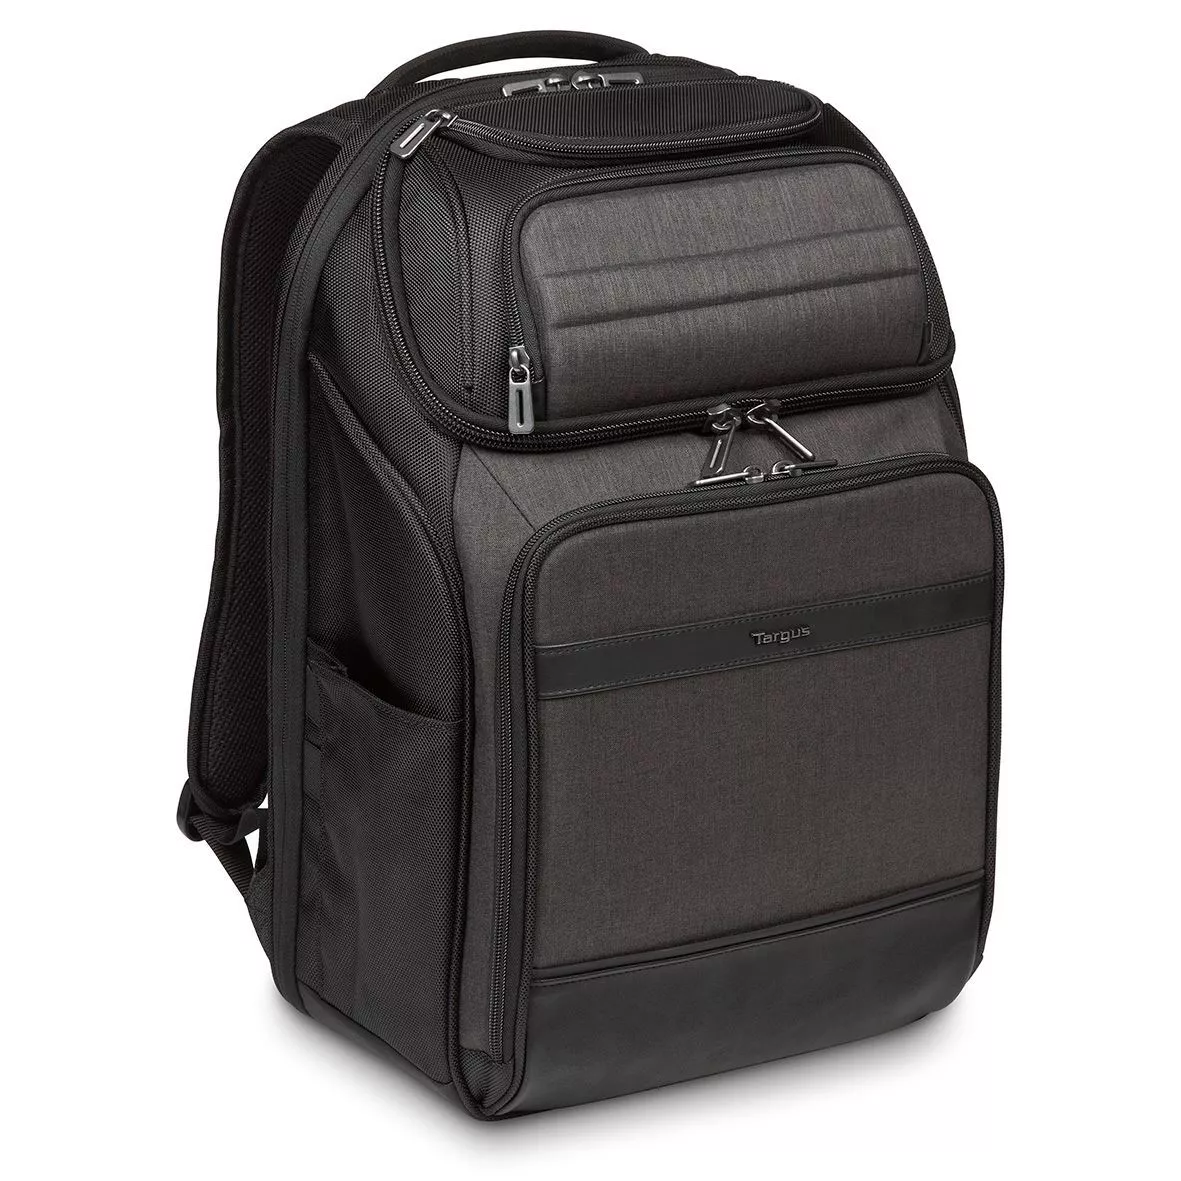 Achat TARGUS CitySmart Professional 15.6inch Laptop Backpack au meilleur prix